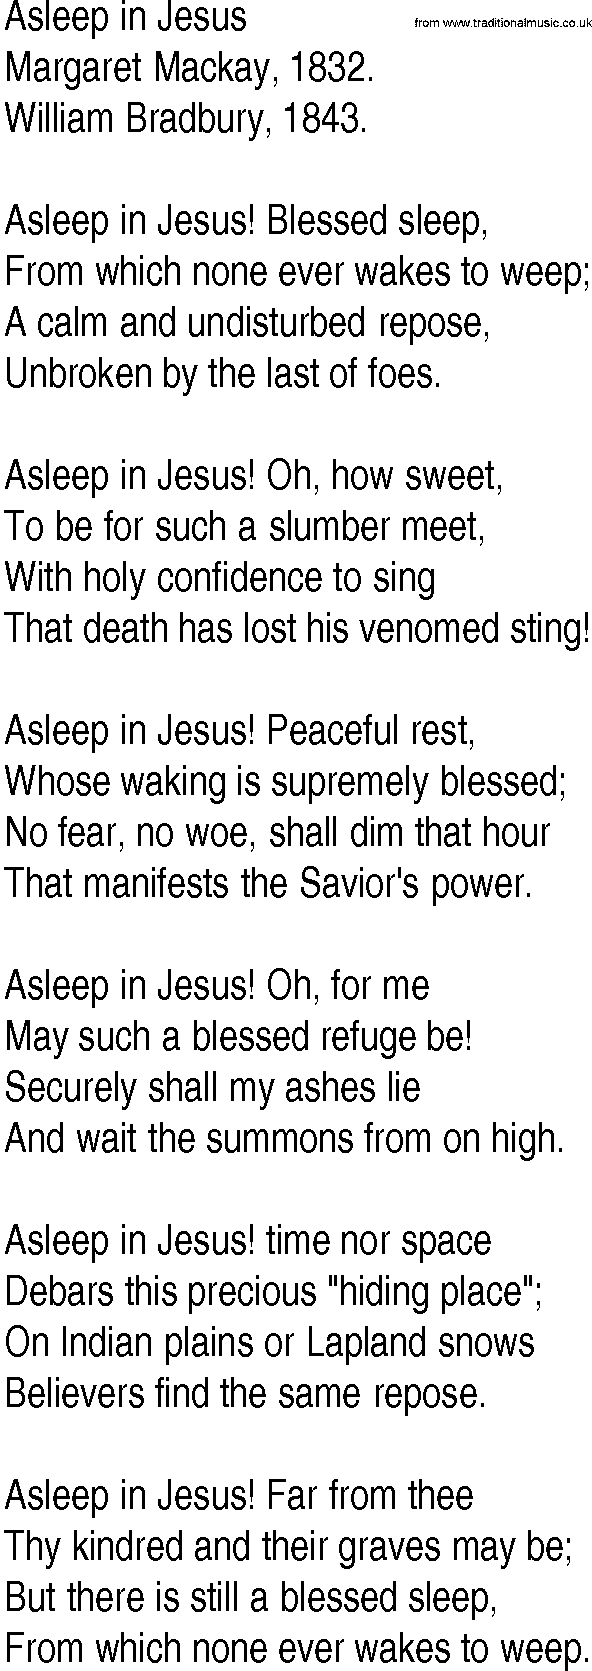 Hymn and Gospel Song: Asleep in Jesus by Margaret Mackay lyrics